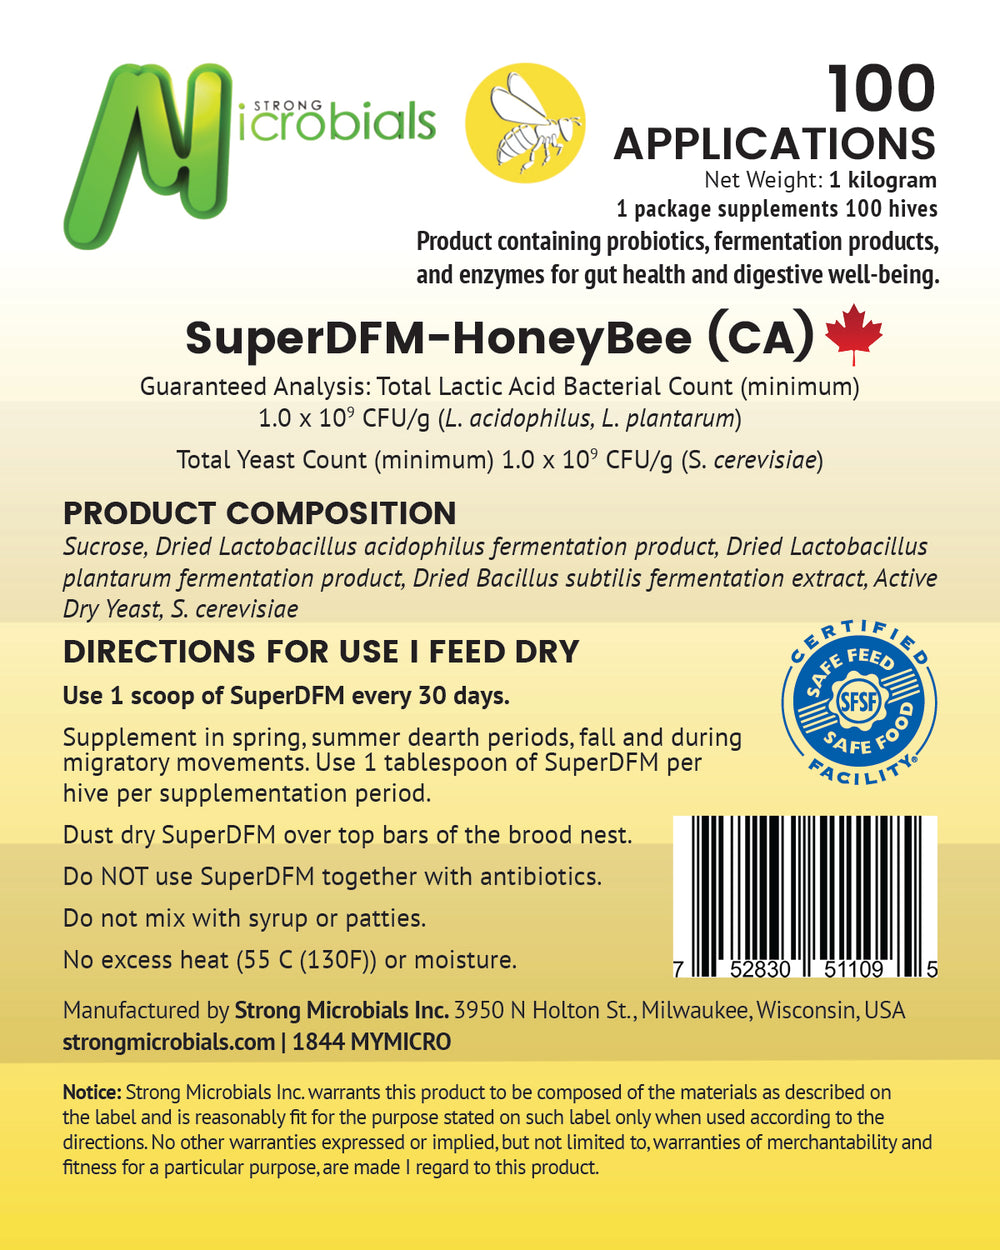 Super DFM - Honeybee Probiotics